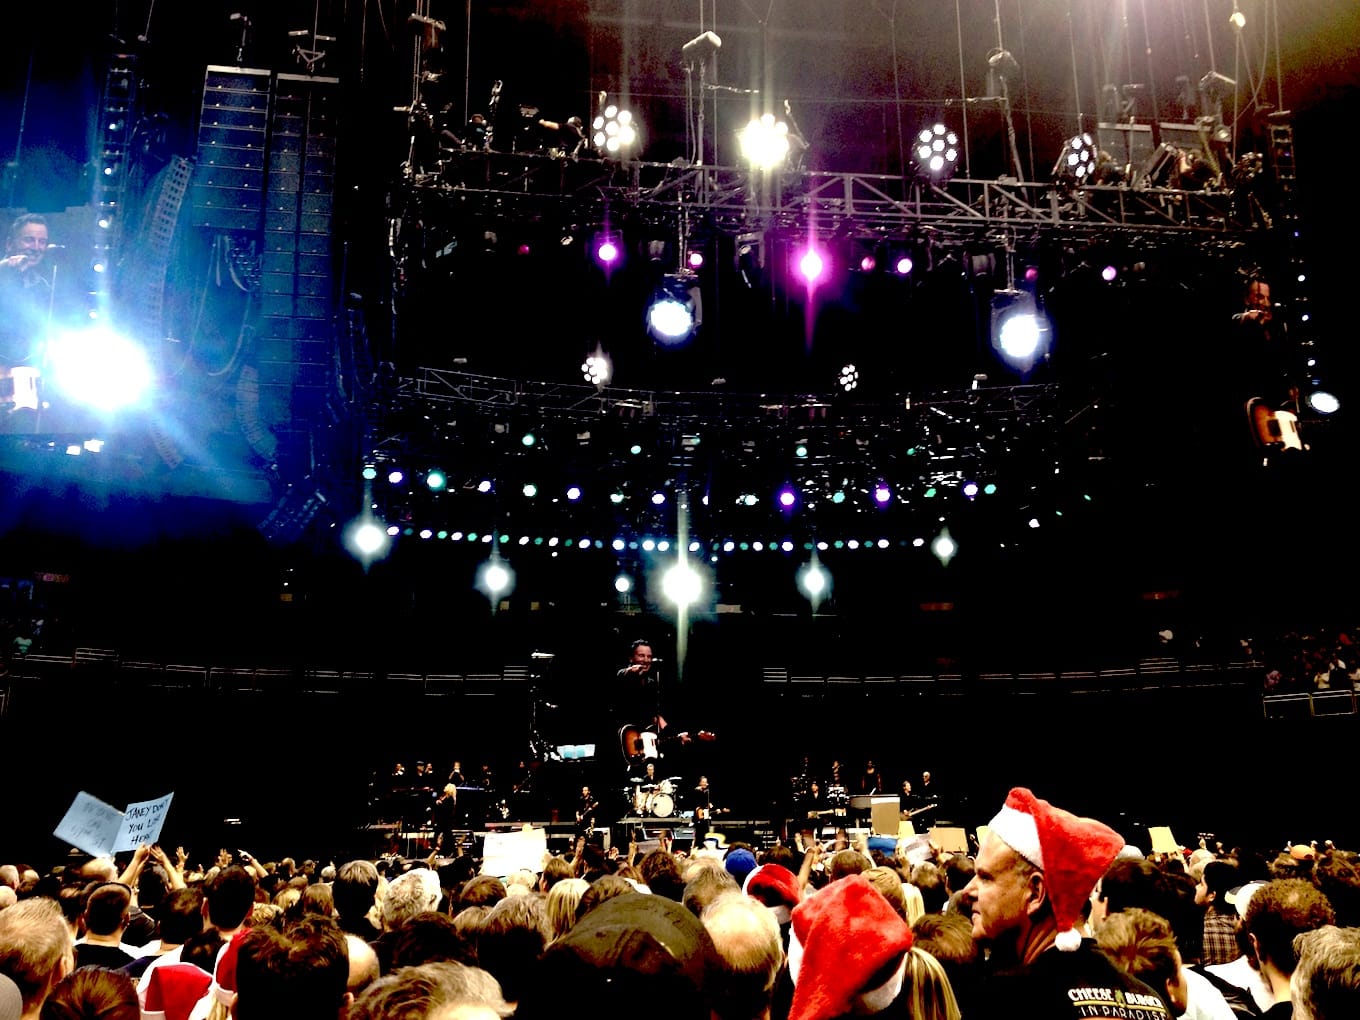 Springsteen in concert